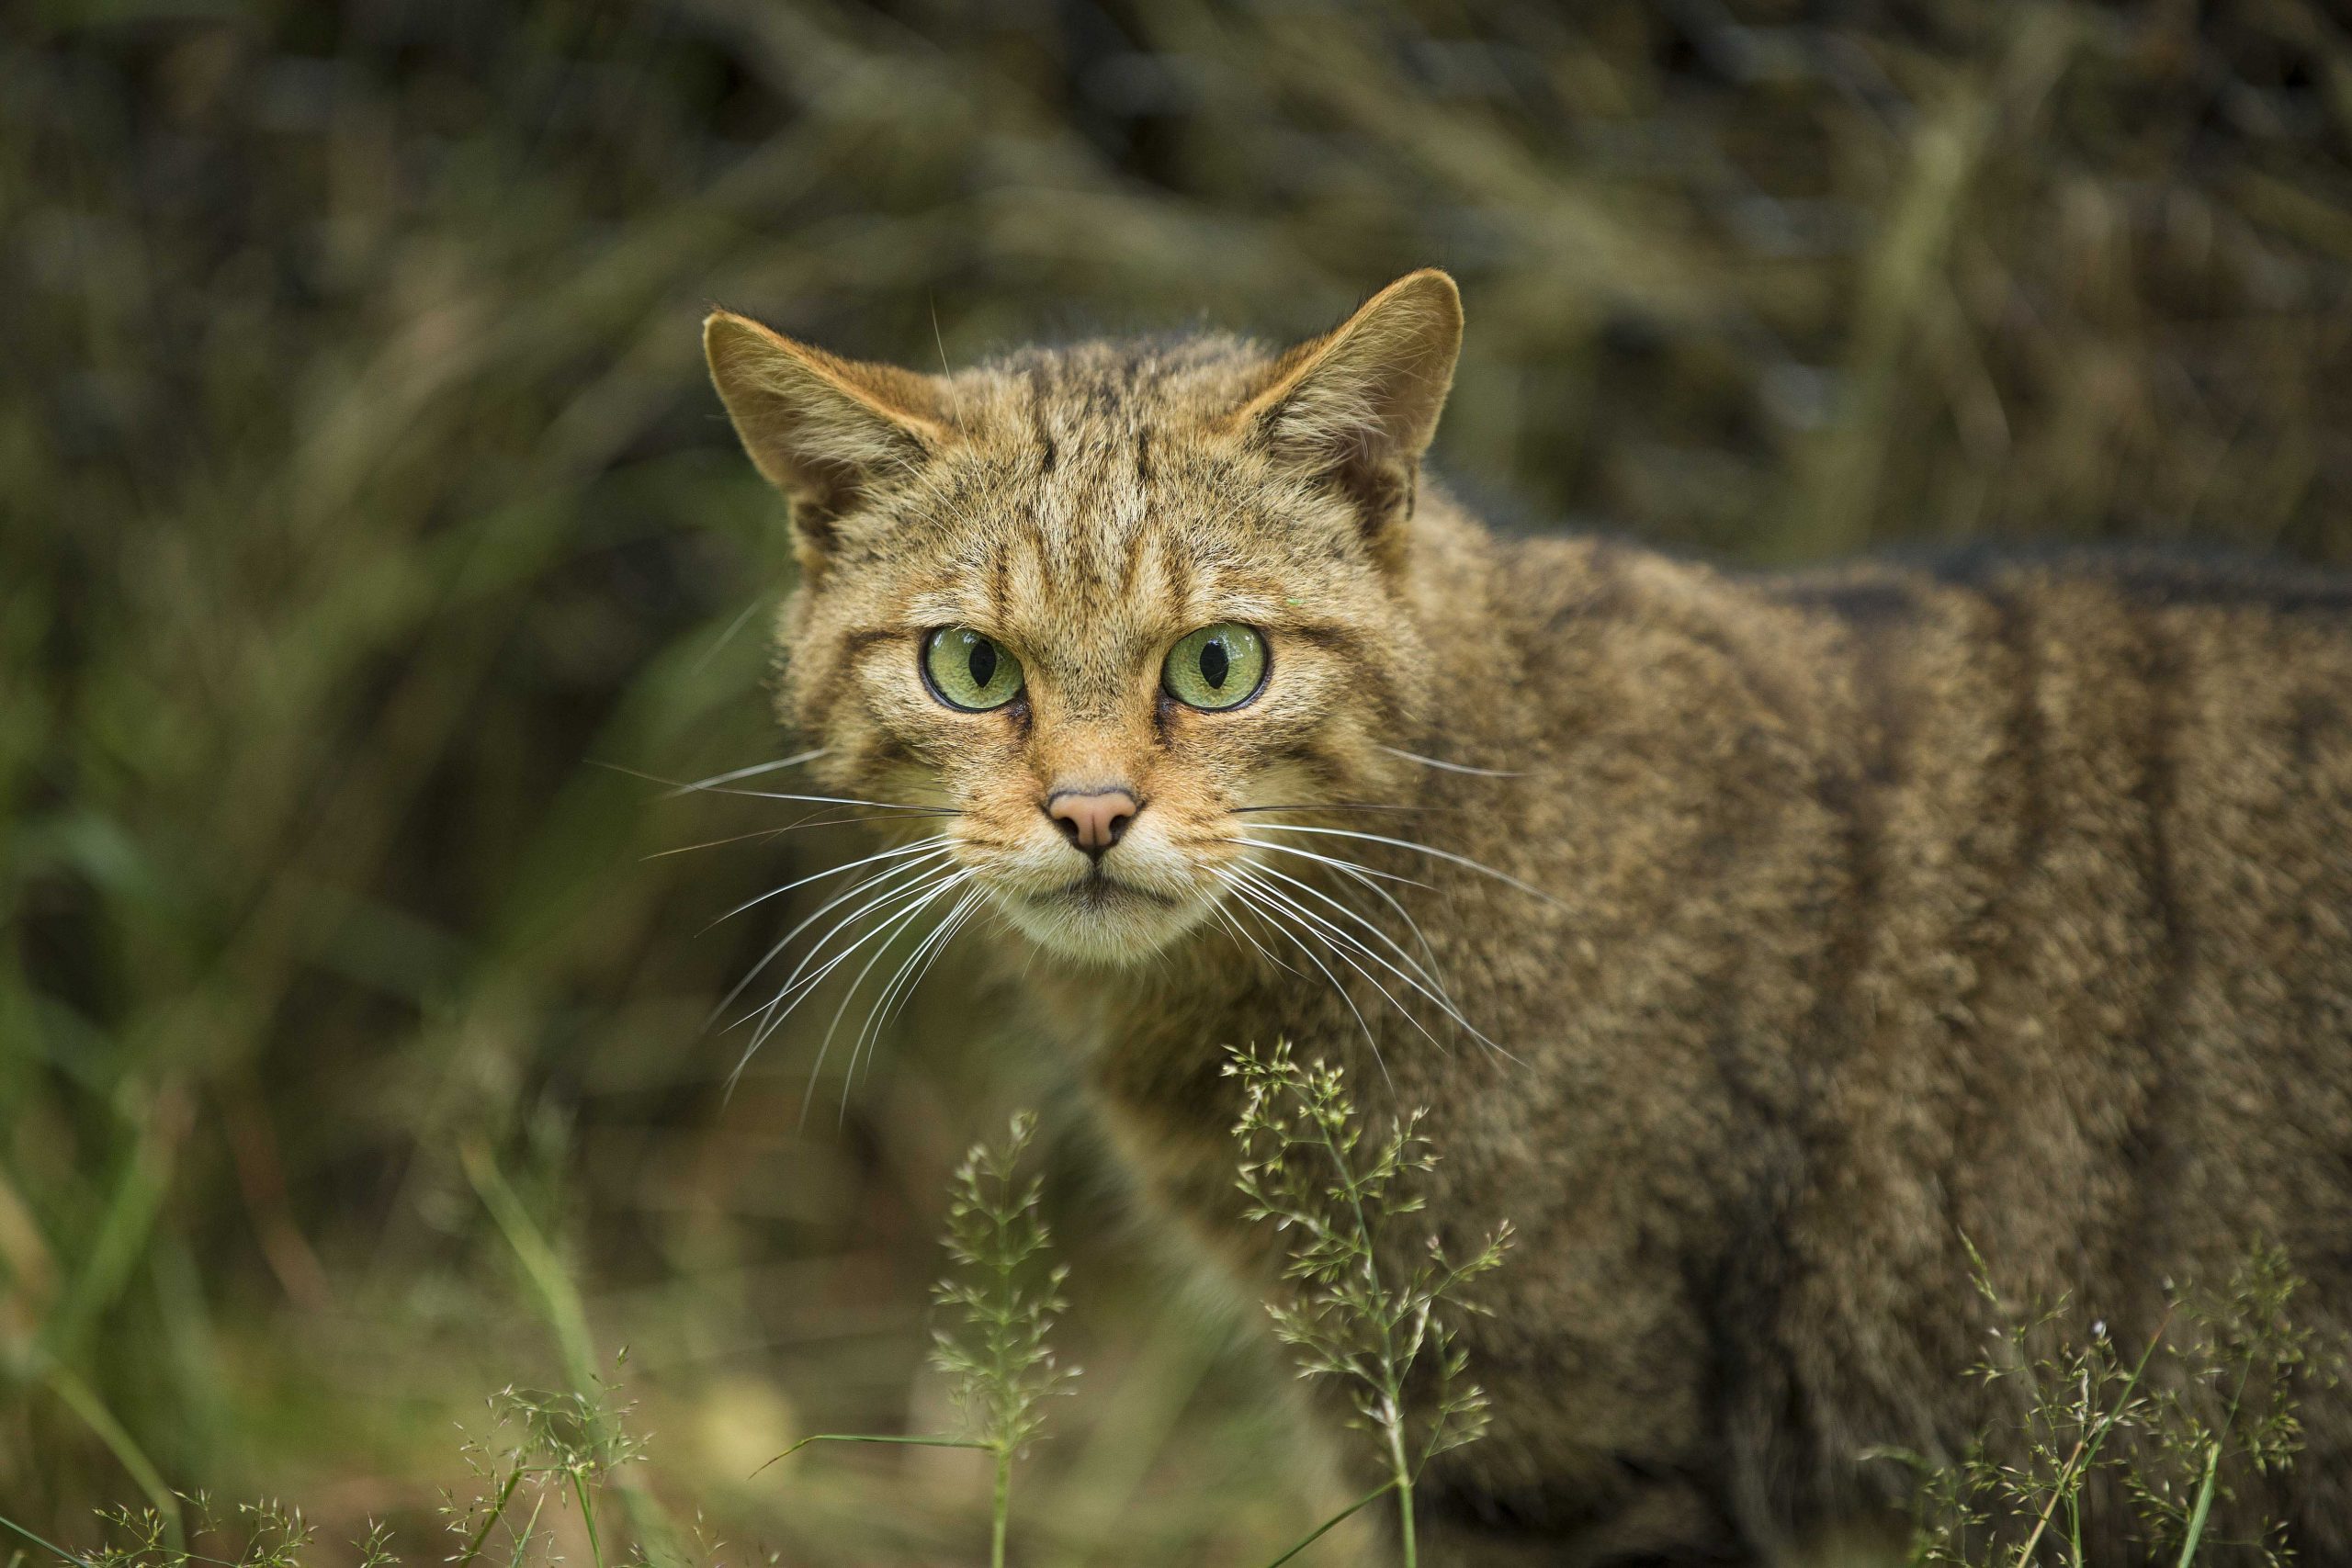 Scottish Wildcat by John Paul